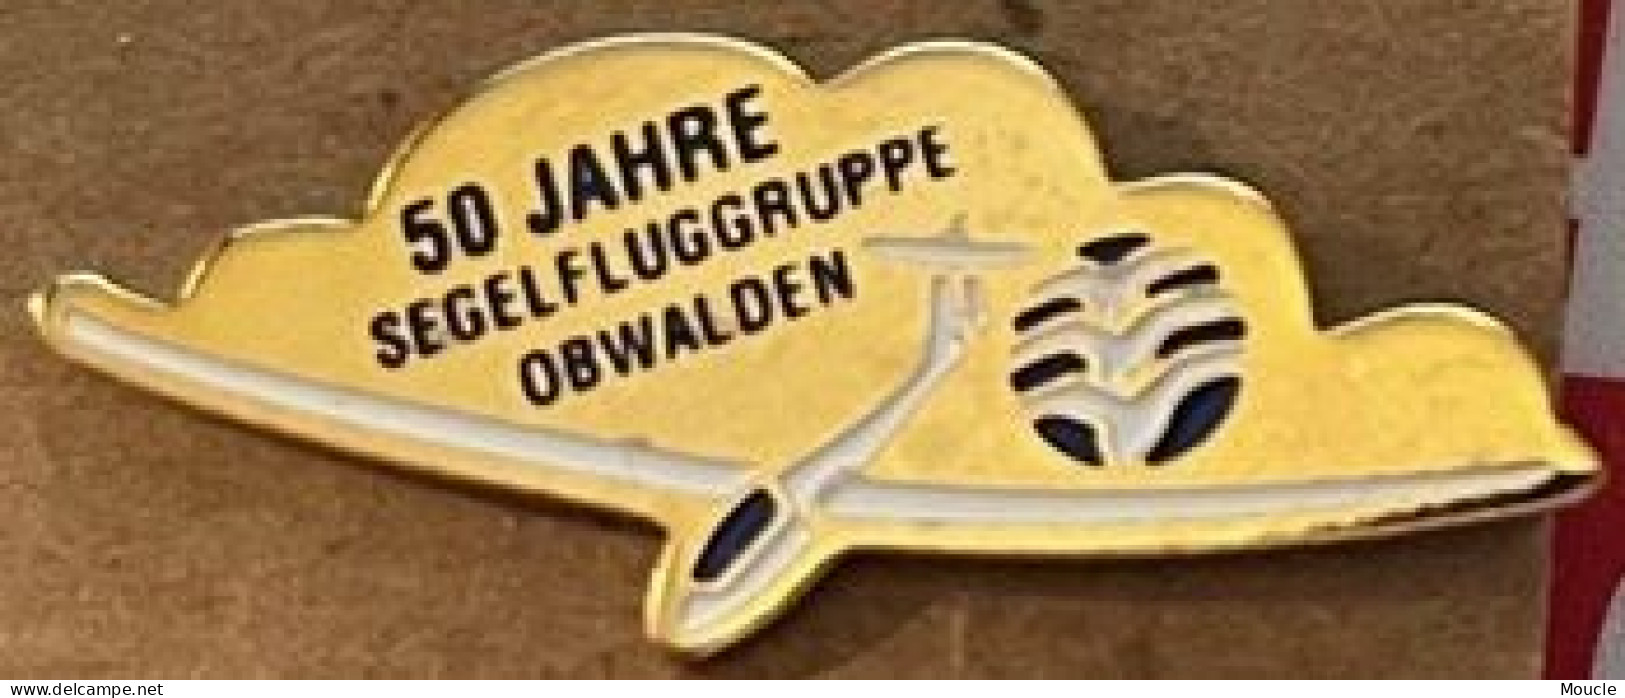 AVION - PLANE - AEREO - FLUGZEUG - 50 JAHRE SEGELFLUGGRUPE - OBWALDEN - PLANEUR BLANC - SUISSE - SCHWEIZ - 50 ANS - (33) - Luftfahrt